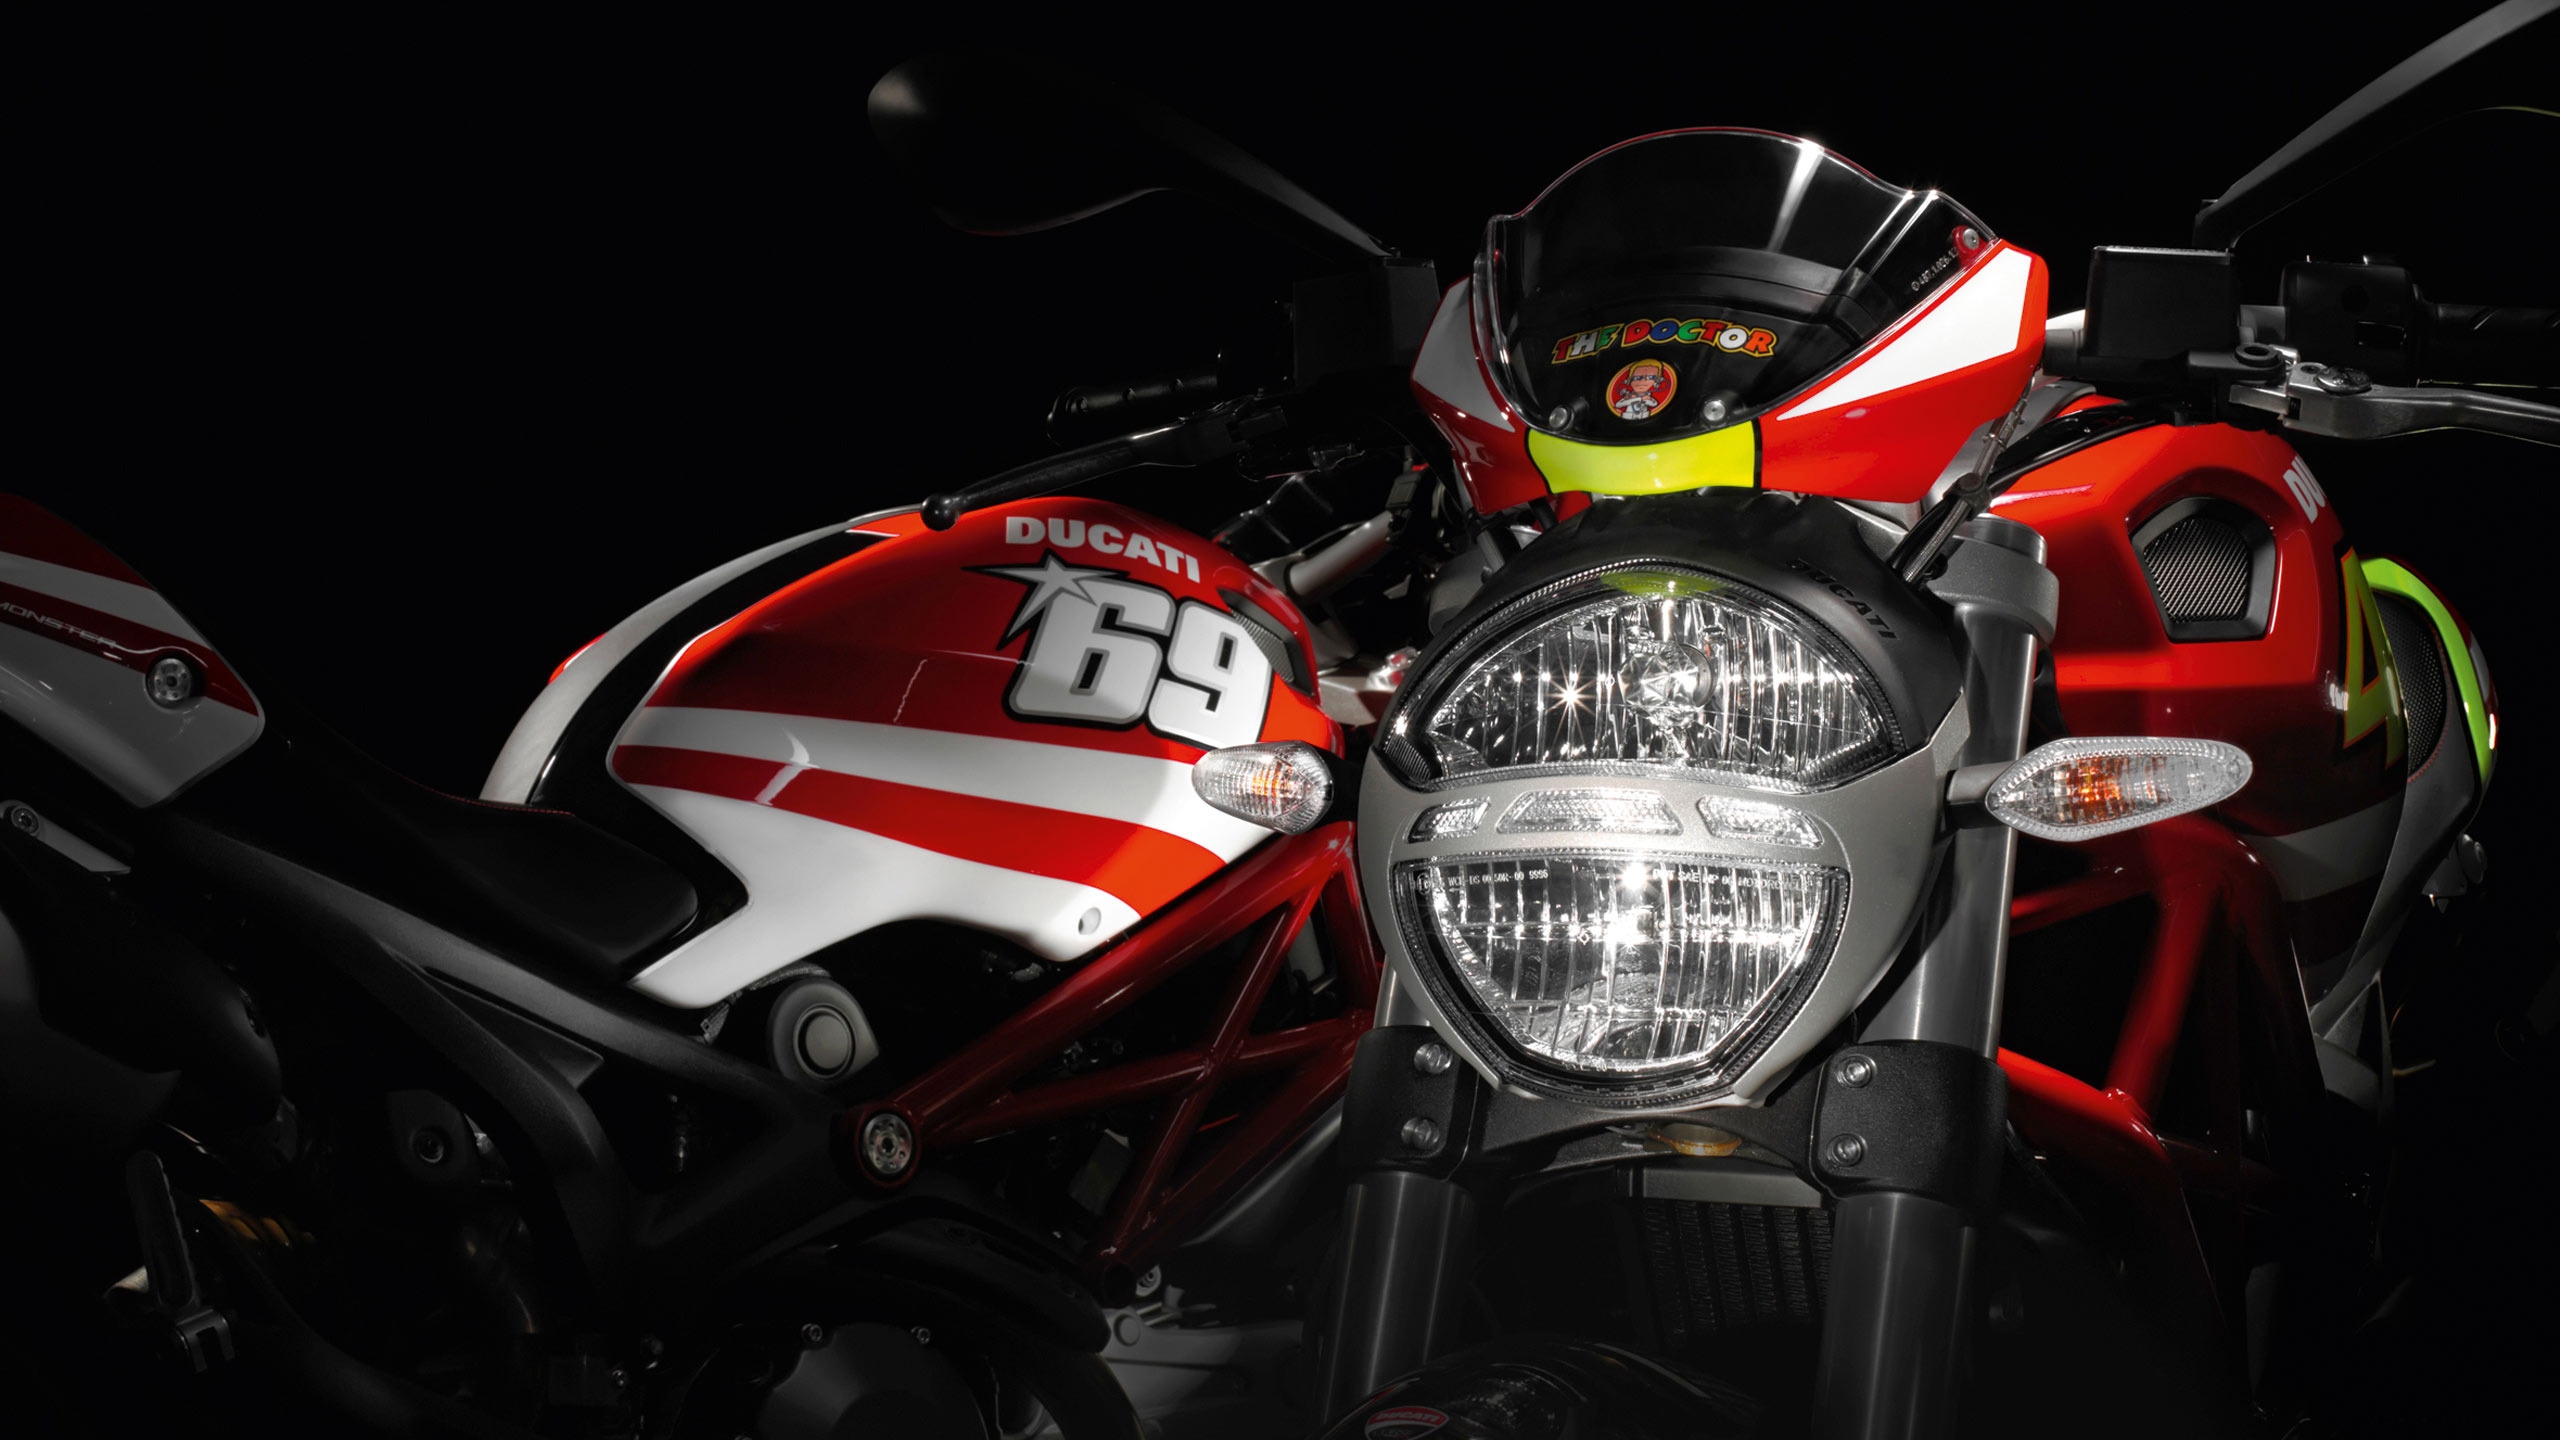 Ducati Rossi and Hayden Replica Ducati for 2560x1440 HDTV resolution